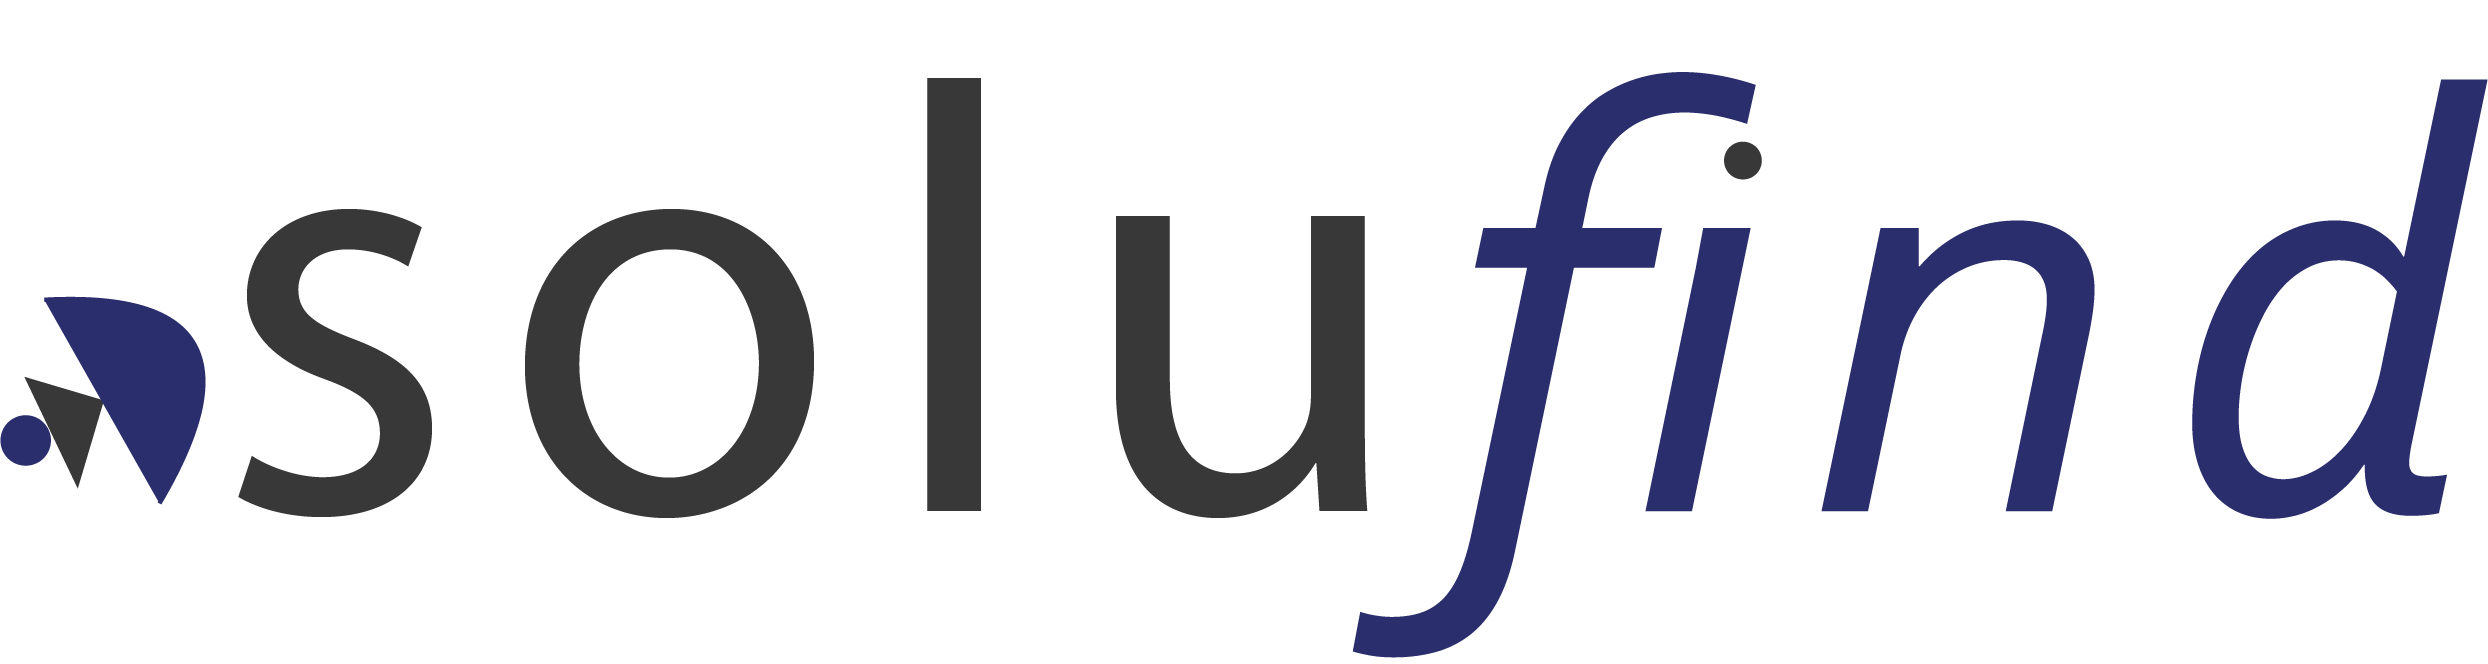 sundf logo